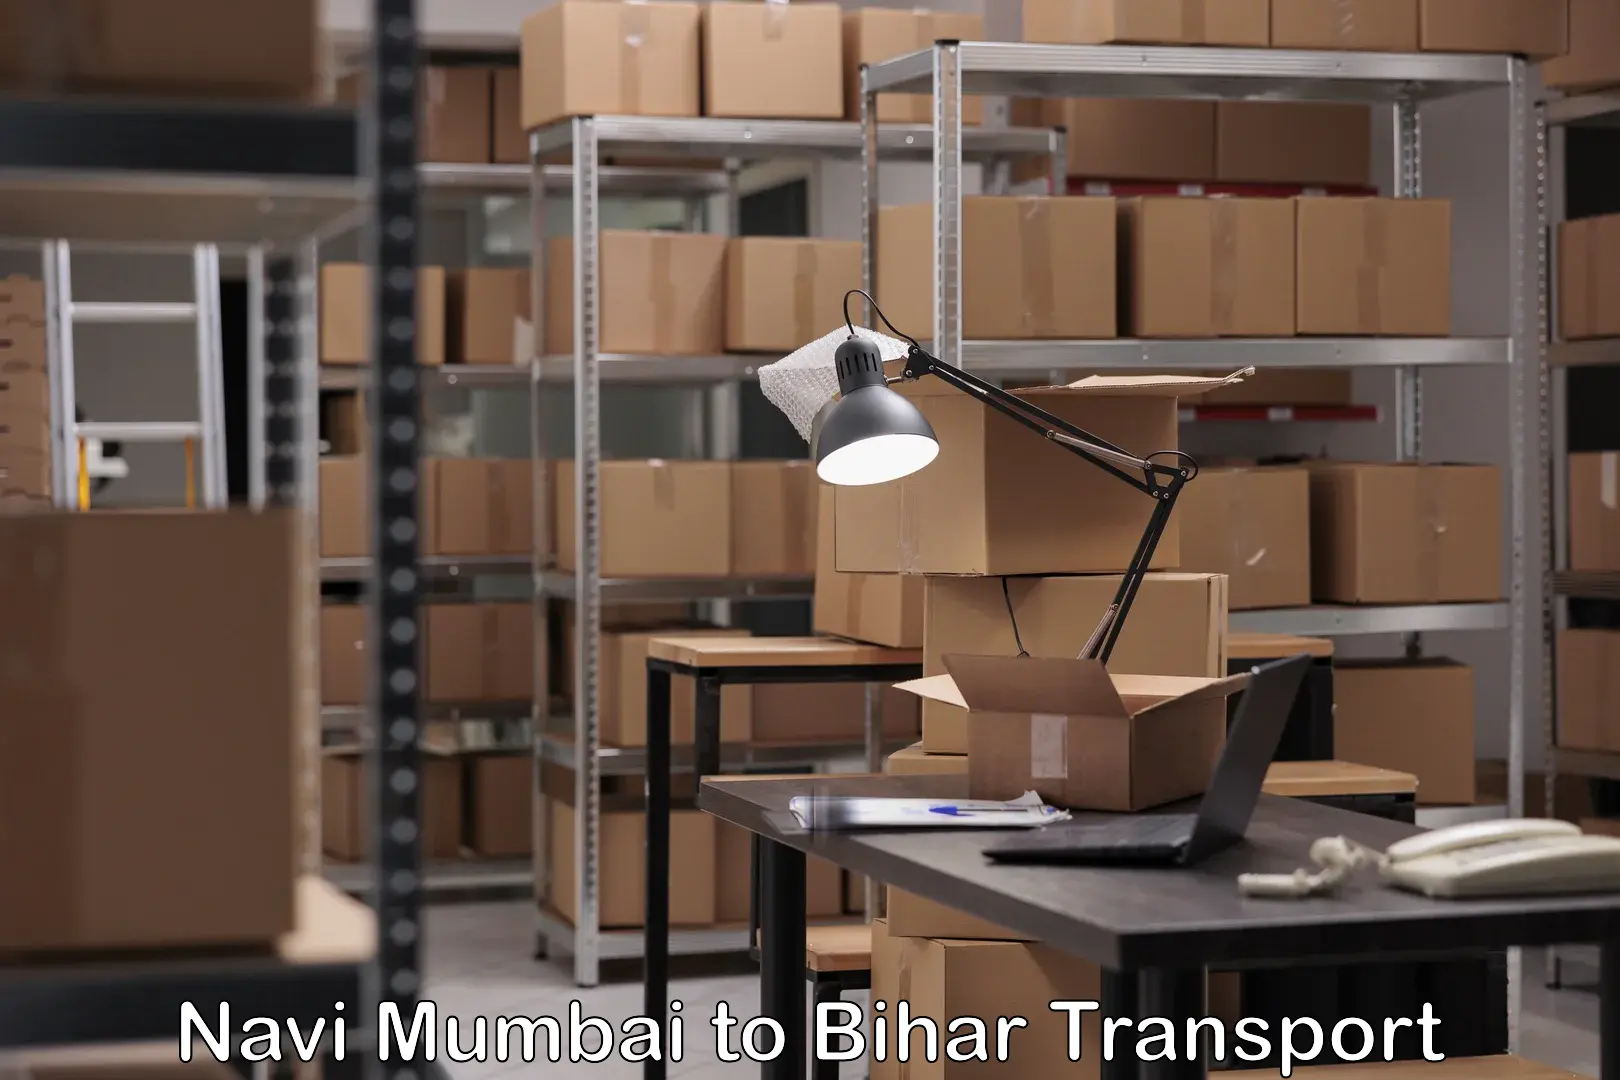 Goods delivery service Navi Mumbai to Kishunganj